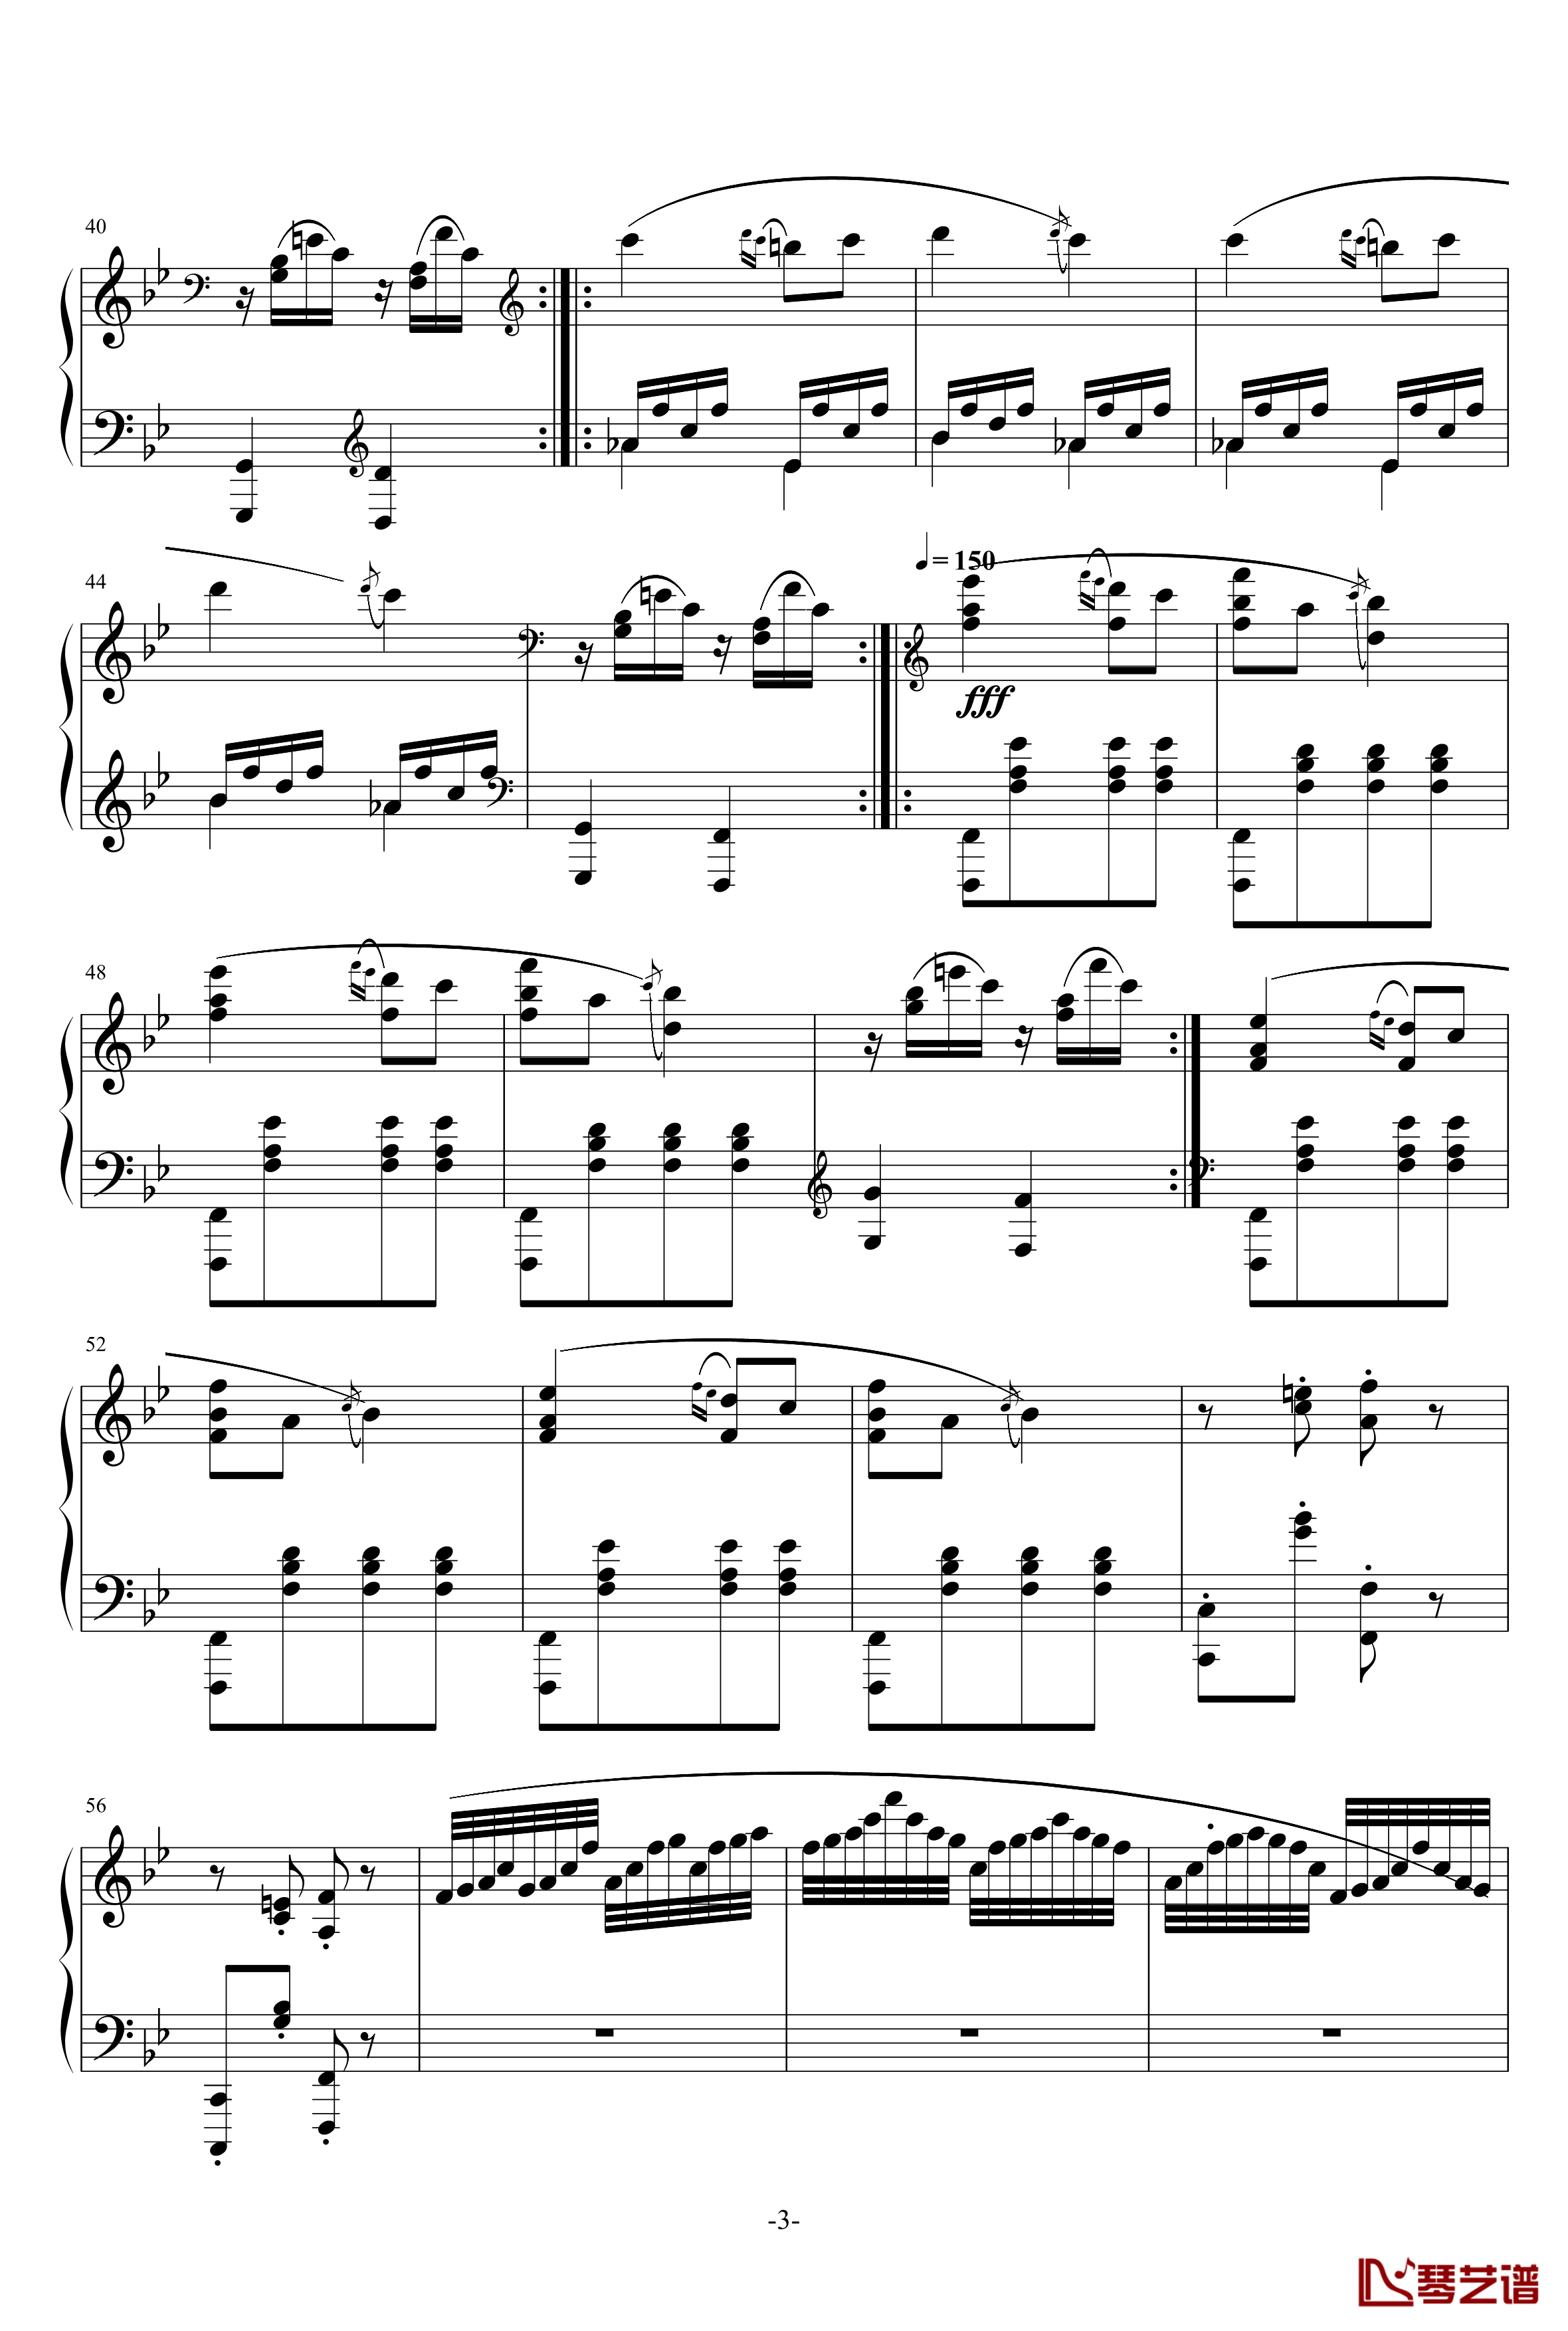 小温狂想曲 3钢琴谱—具有匈牙利狂想曲风格的一曲。—我的代表作-一个球3